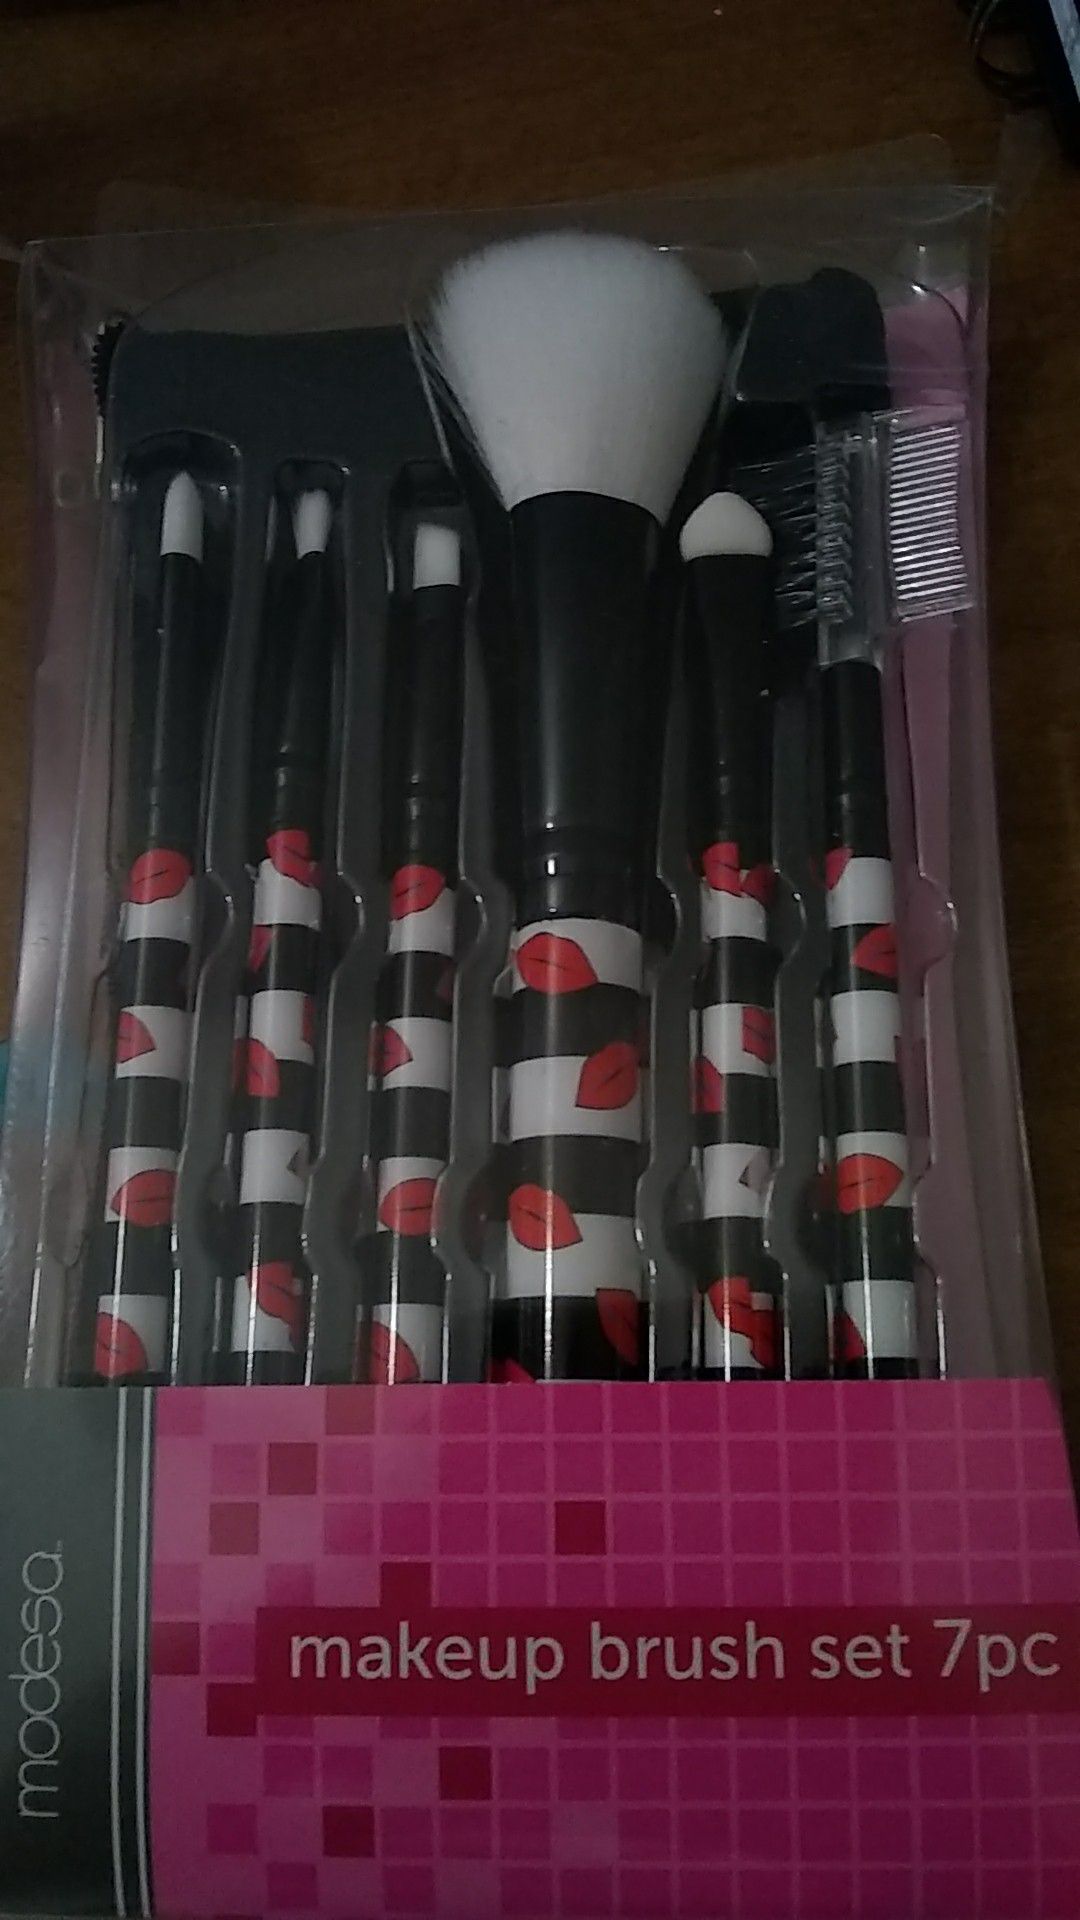 Modesa makeup brush set (7 piece set)